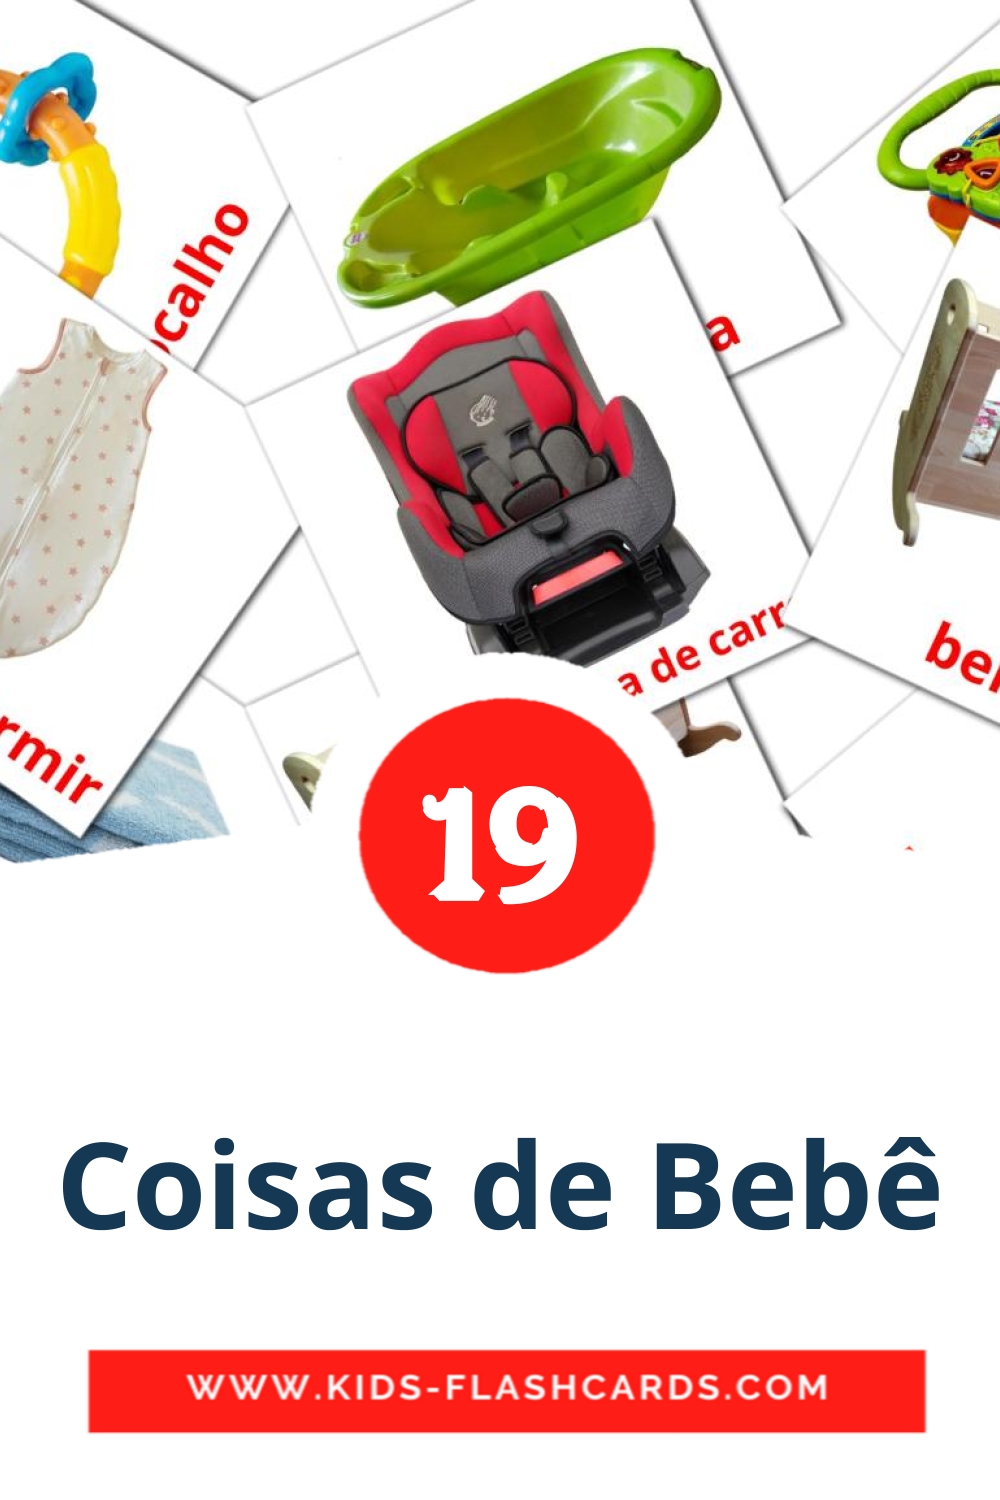 Coisas de Bebê на португальском для Детского Сада (19 карточек)